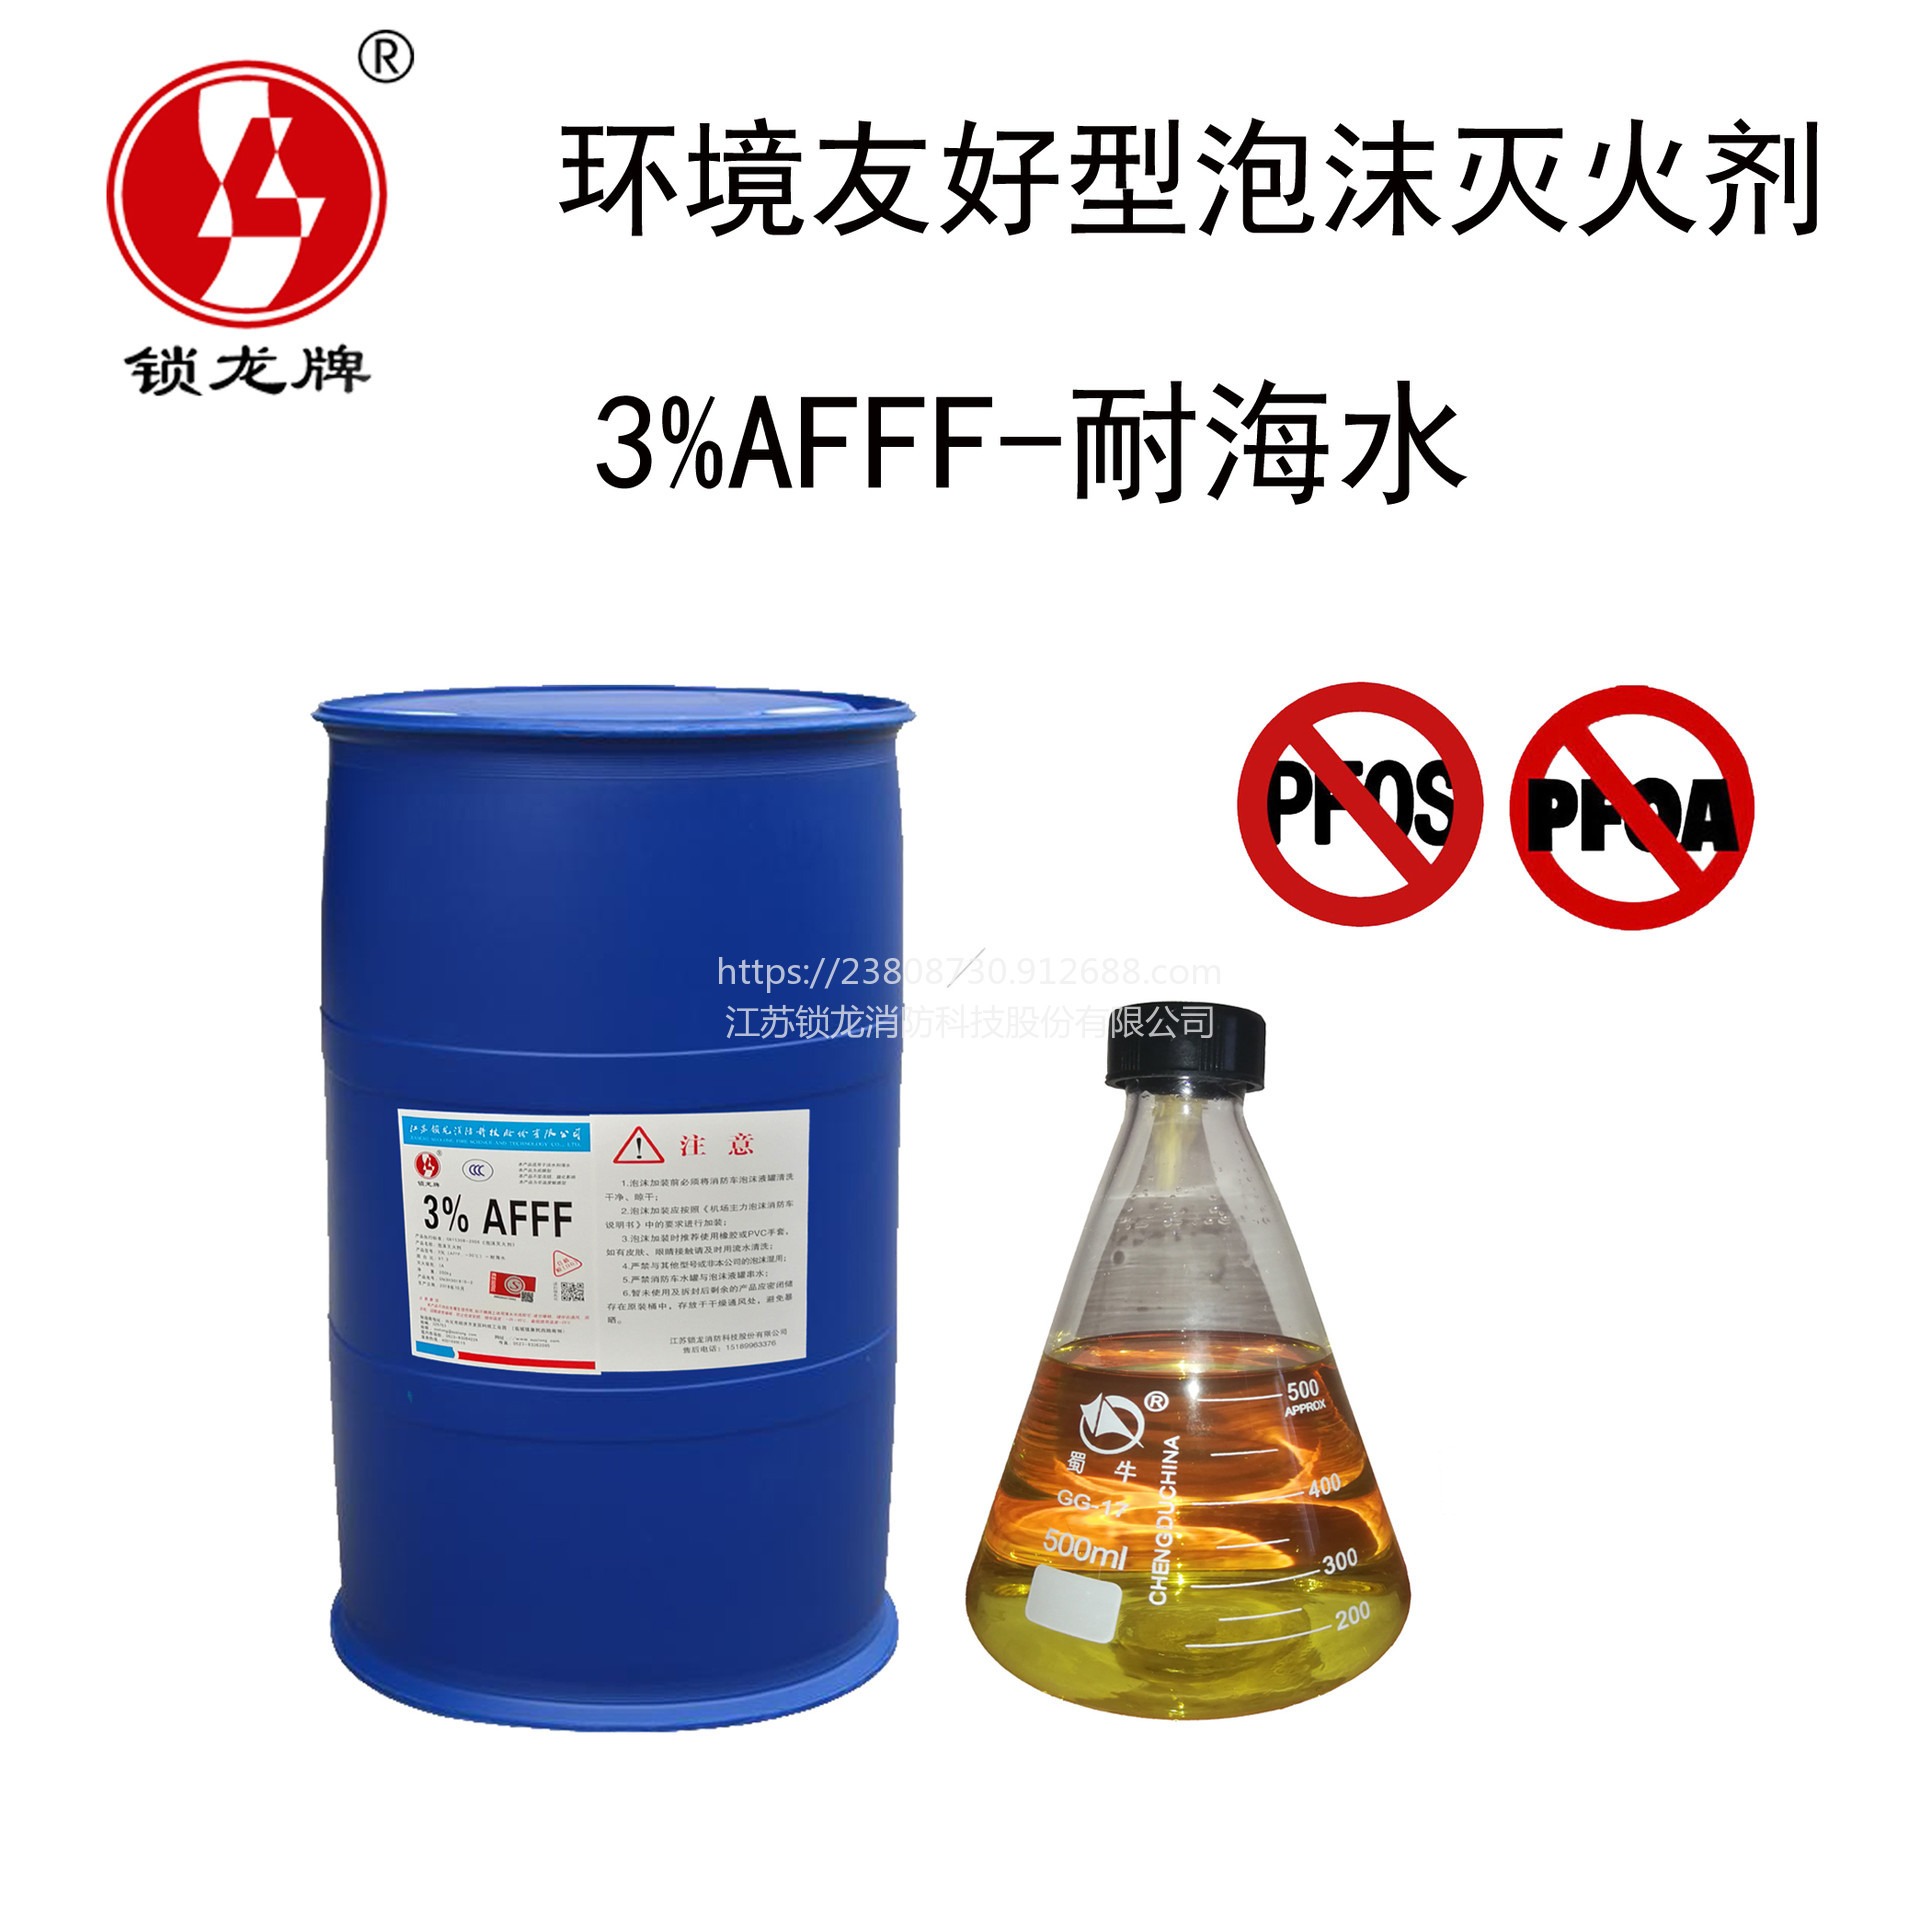 锁龙环境友好型泡沫灭火剂 SL-AFFF3%-耐寒耐海水水成膜泡沫灭火剂 不含PFOS/PFOA无毒环保可降解